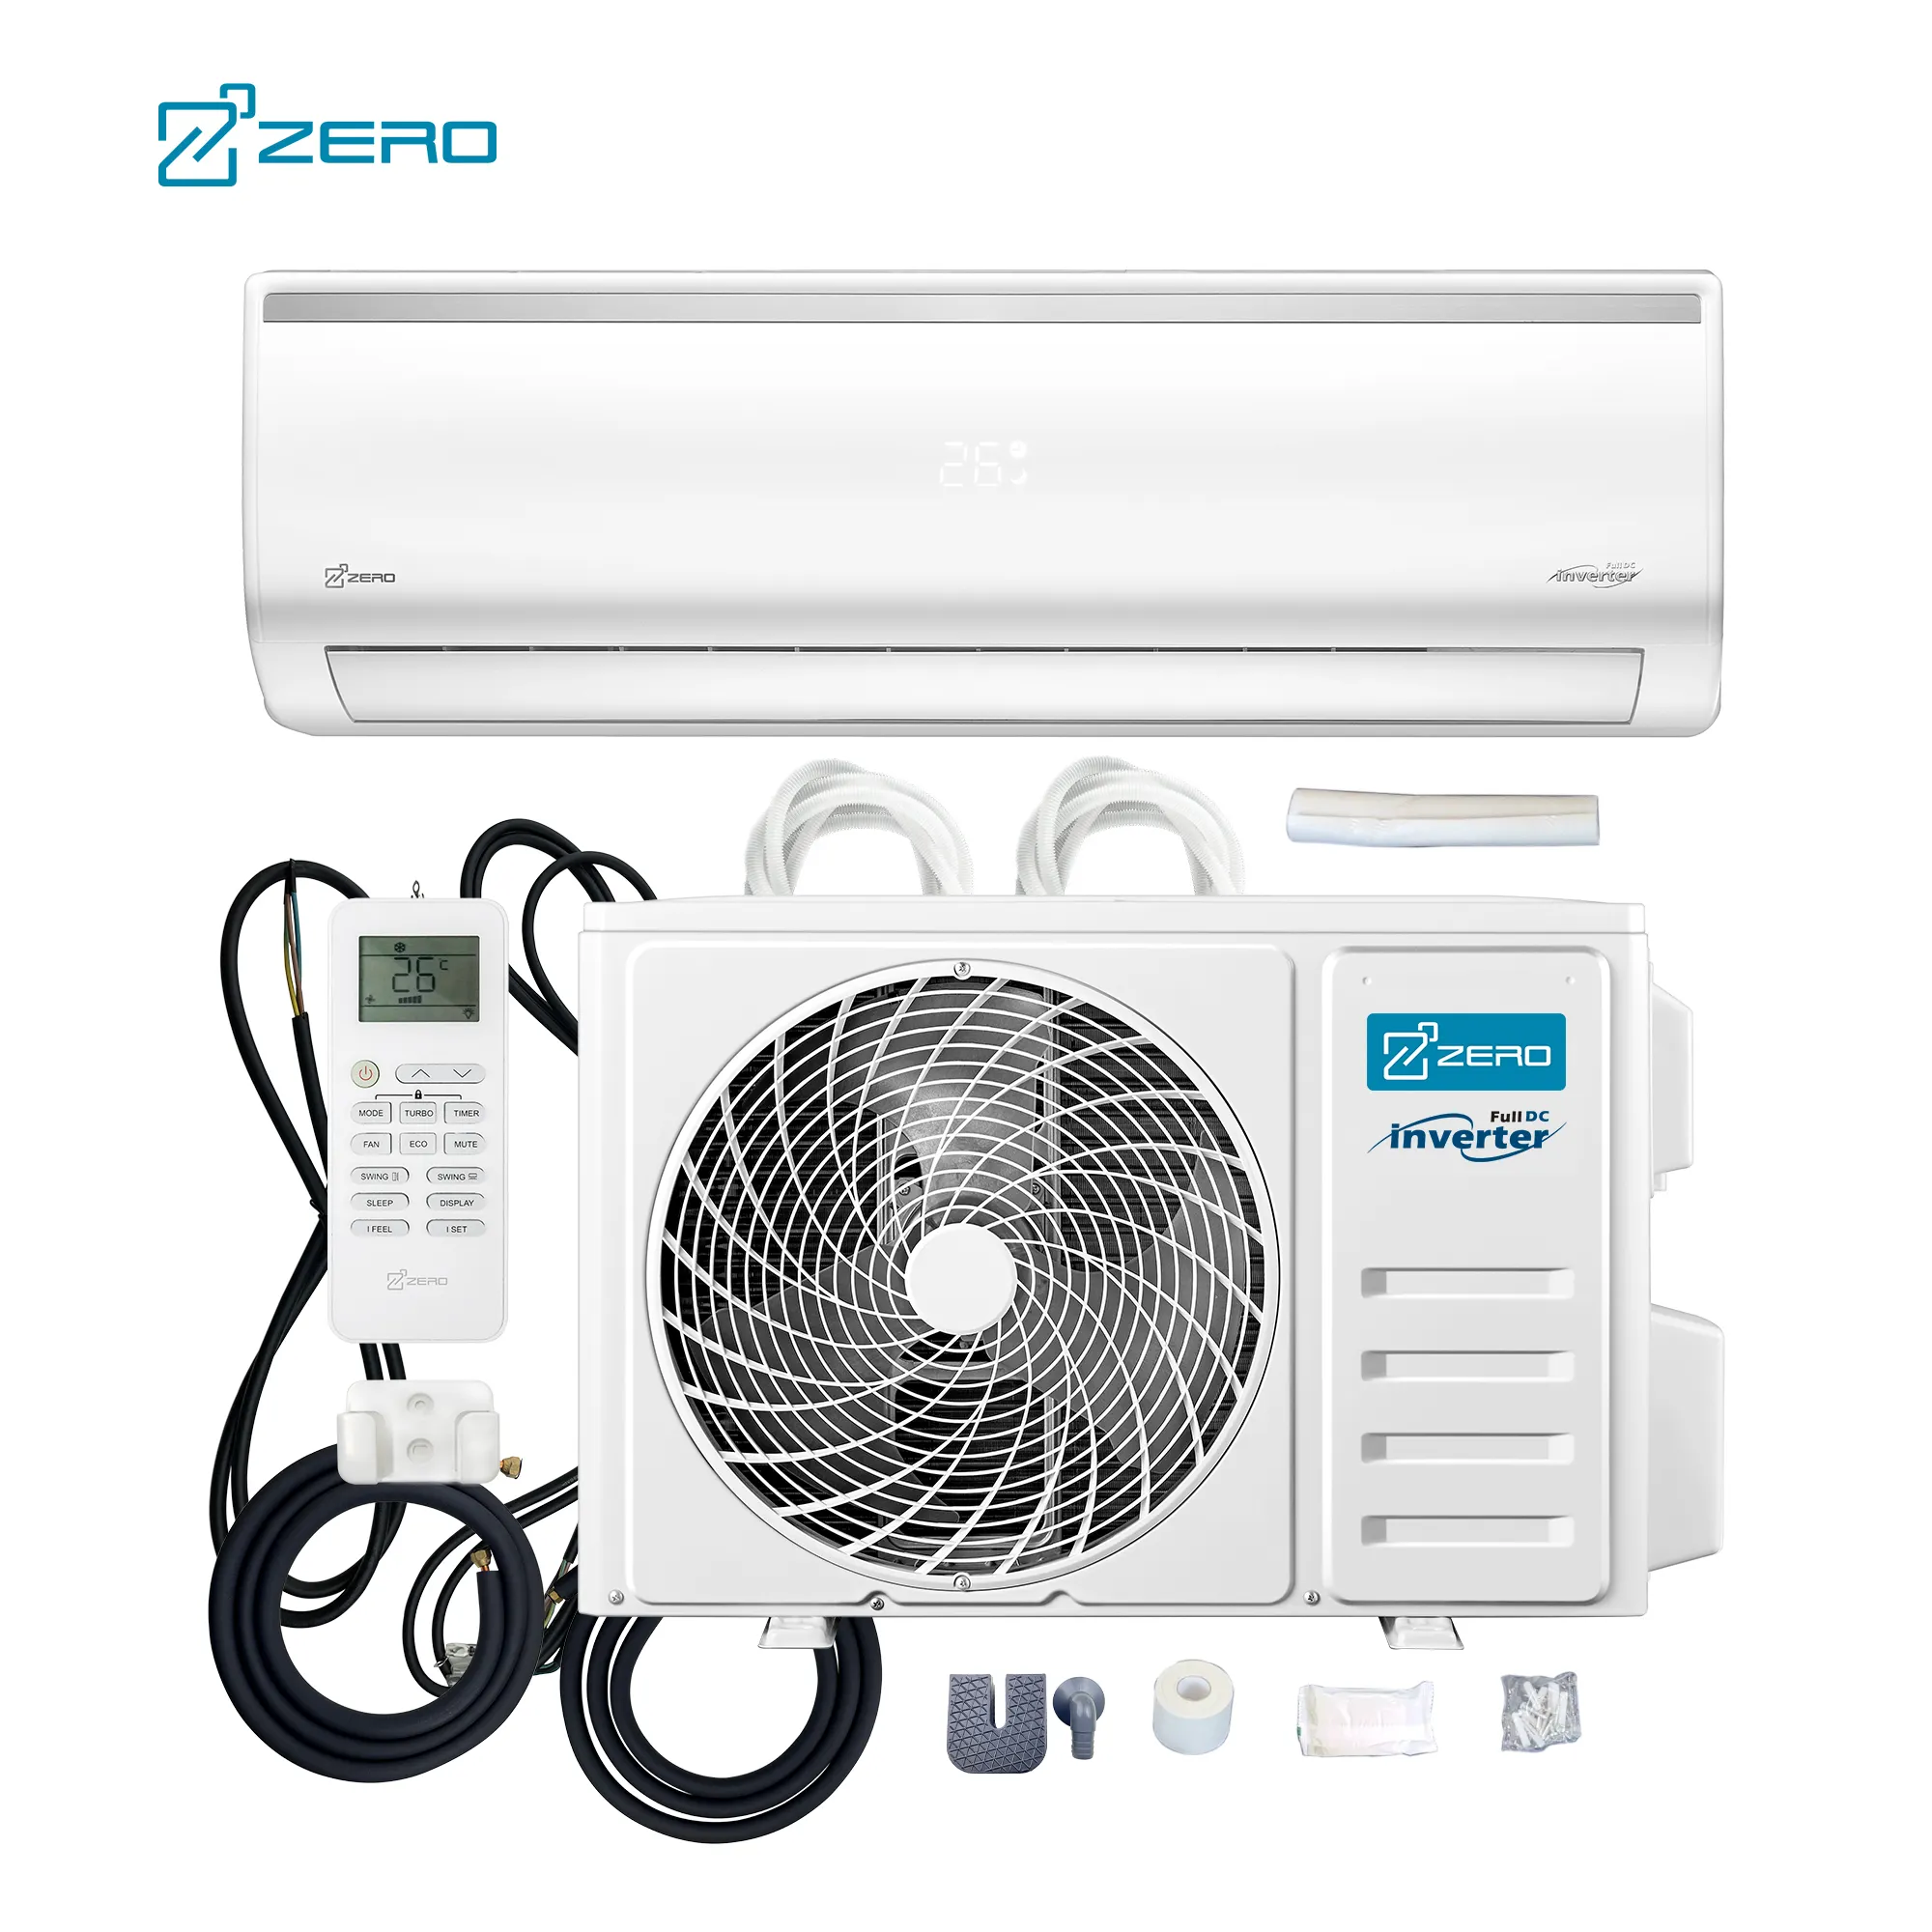 ZERO Z-cool 50Hz 5 - Fan speed mini split air conditioner and heat pump 9k 12k 18k 24k Btu split inverter air conditioners